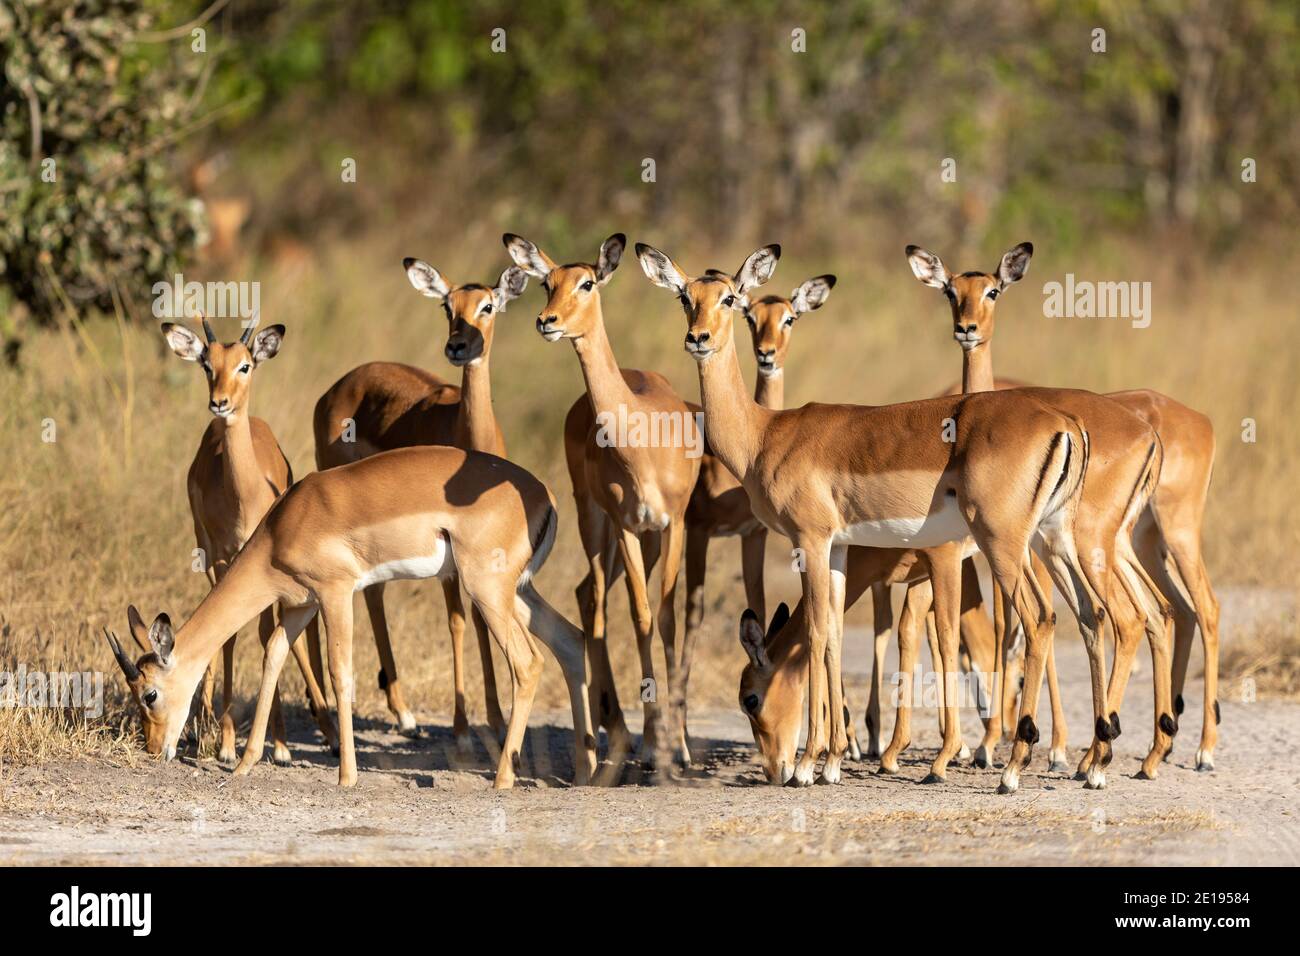 Herd of impala standing together looking alert in Khwai Reserve in Okavango Delta in Botswana Stock Photo